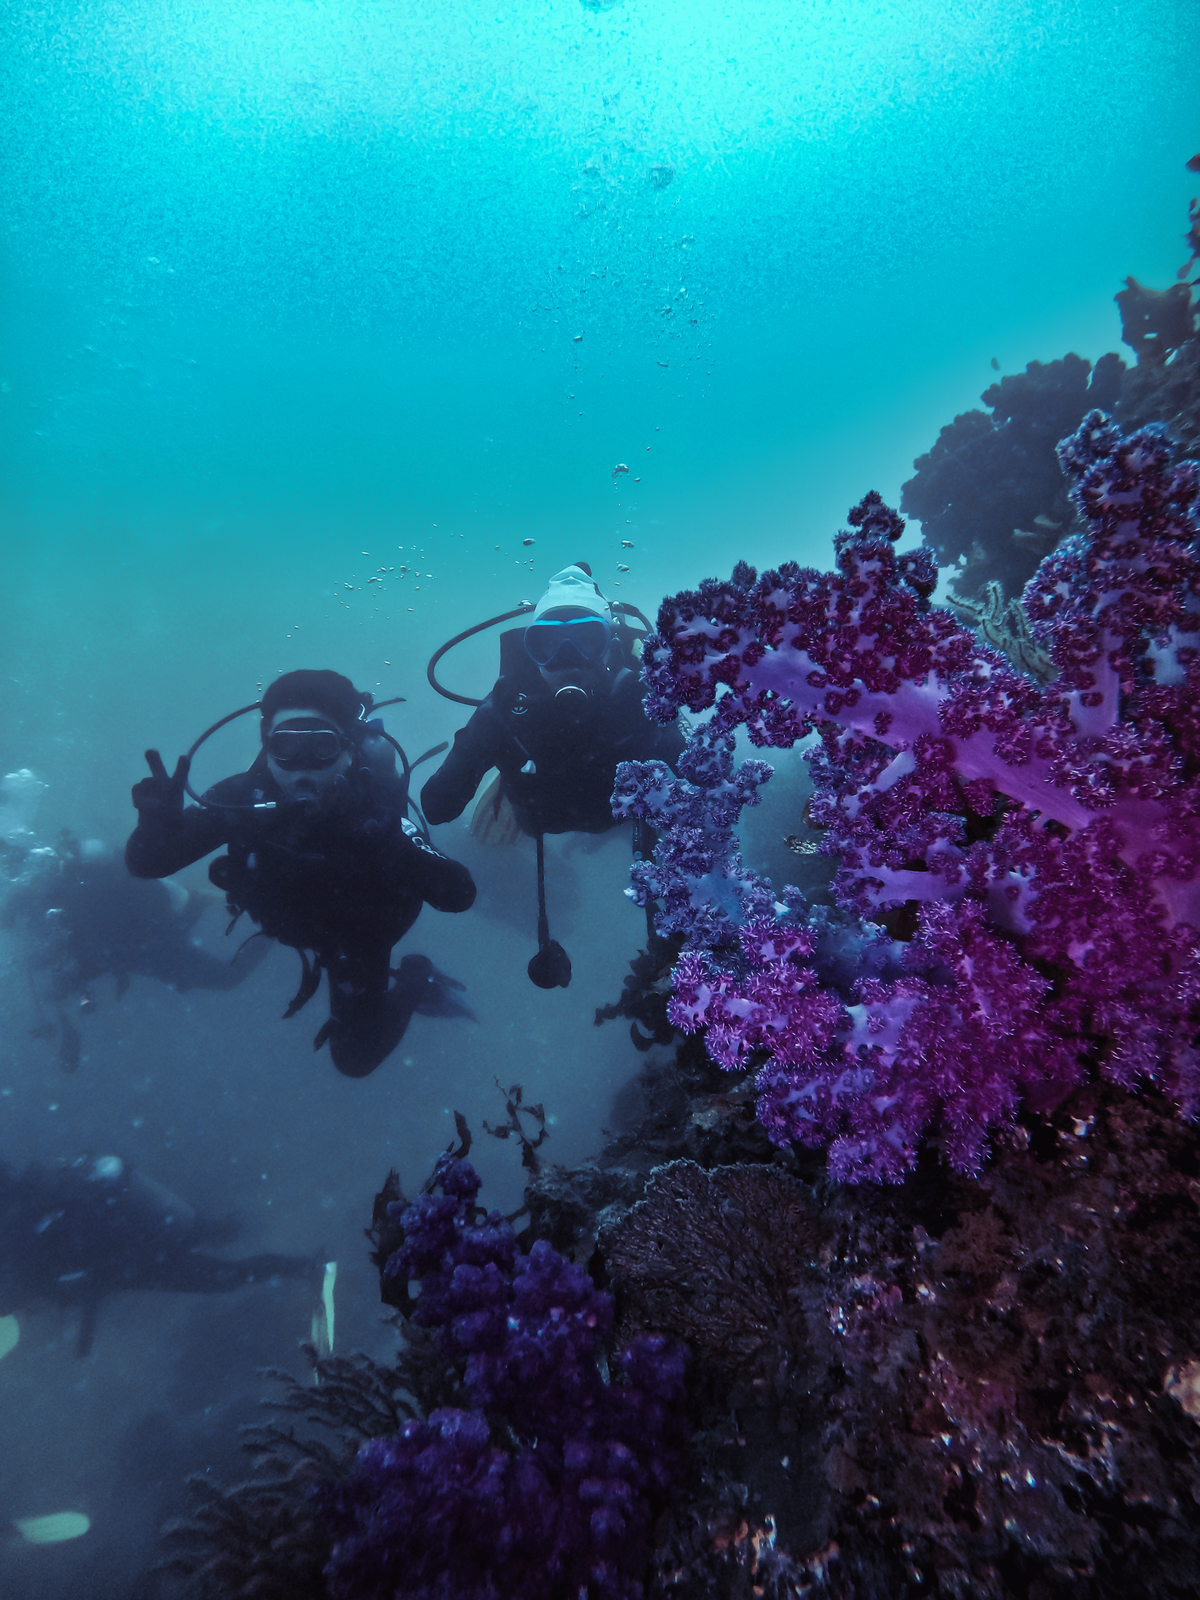 ▲ 연산호 군락 사이에서 다이빙을 진행하며 찍은 사진입니다. 동남아 지역의 산호와 다르게 제주도의 연산호는 보라색, 노란색 등 화려한 색이 특징입니다.